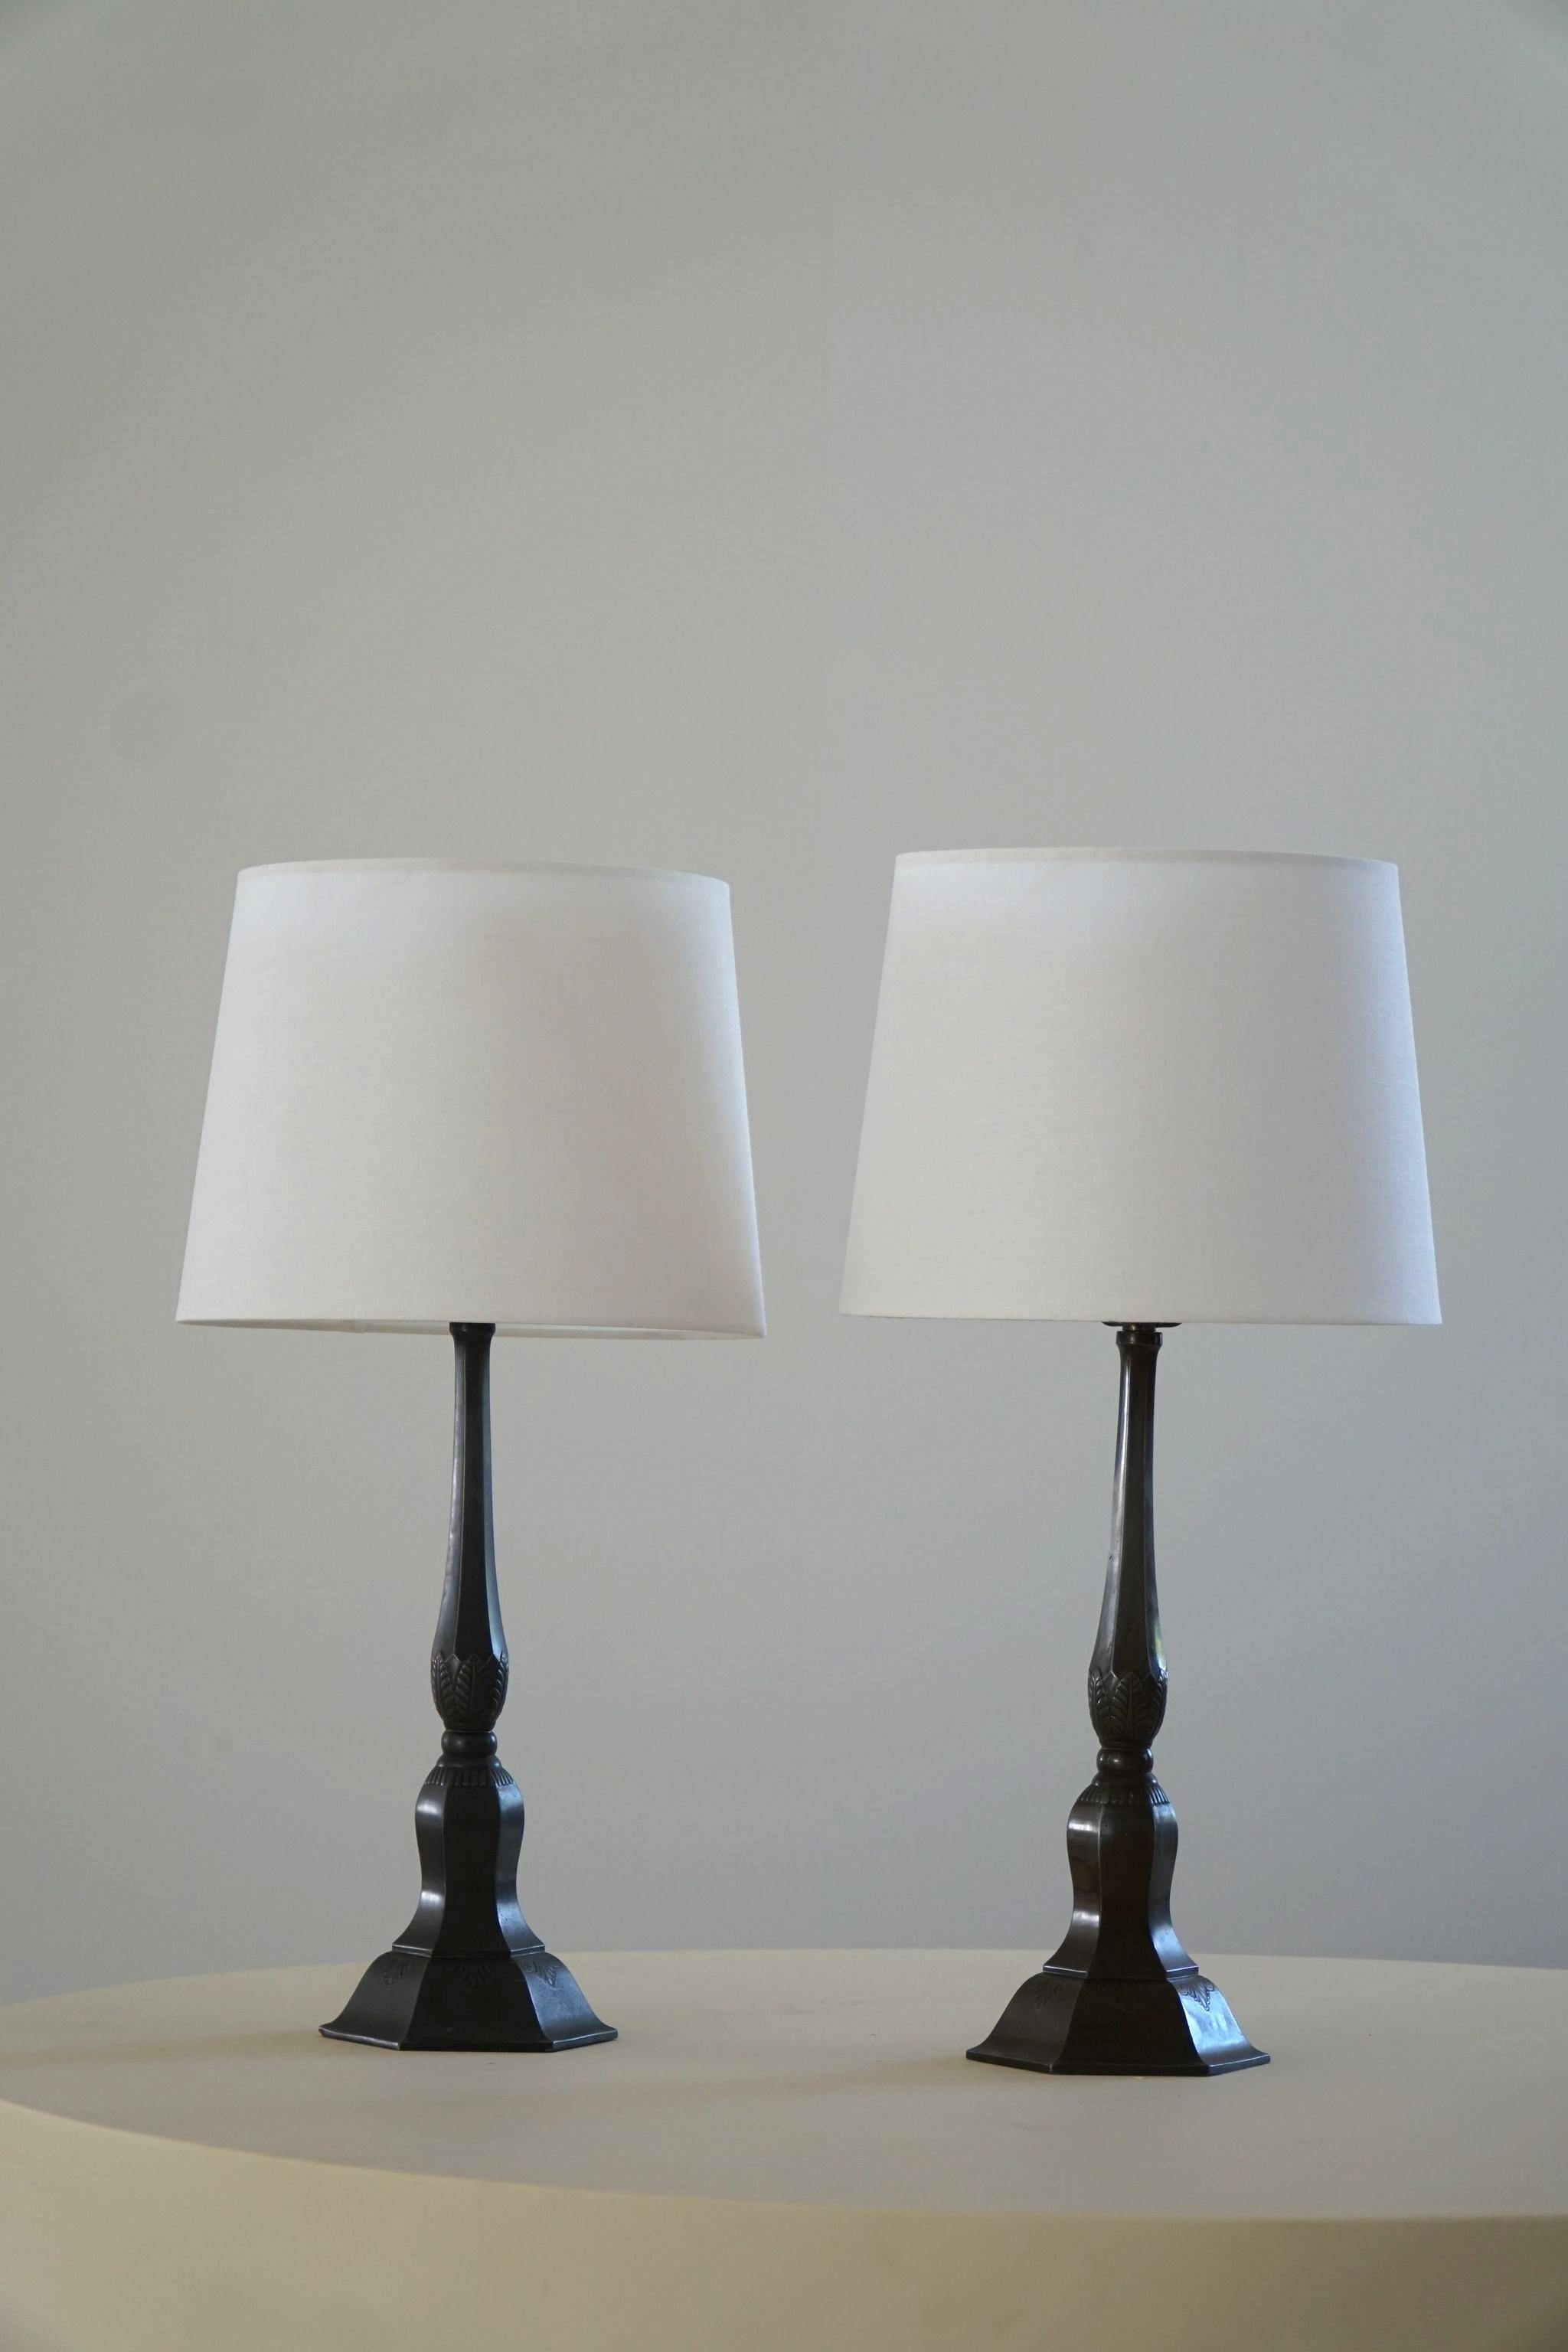 Ein Paar Tischlampen aus patiniertem Diskometall. Hergestellt vom dänischen Designer Just Andersen in den 1920er Jahren. Darunter unterschrieben. 

Just Andersen (1884-1943) ist ein bedeutender Vertreter des modernen dänischen Neoklassizismus.